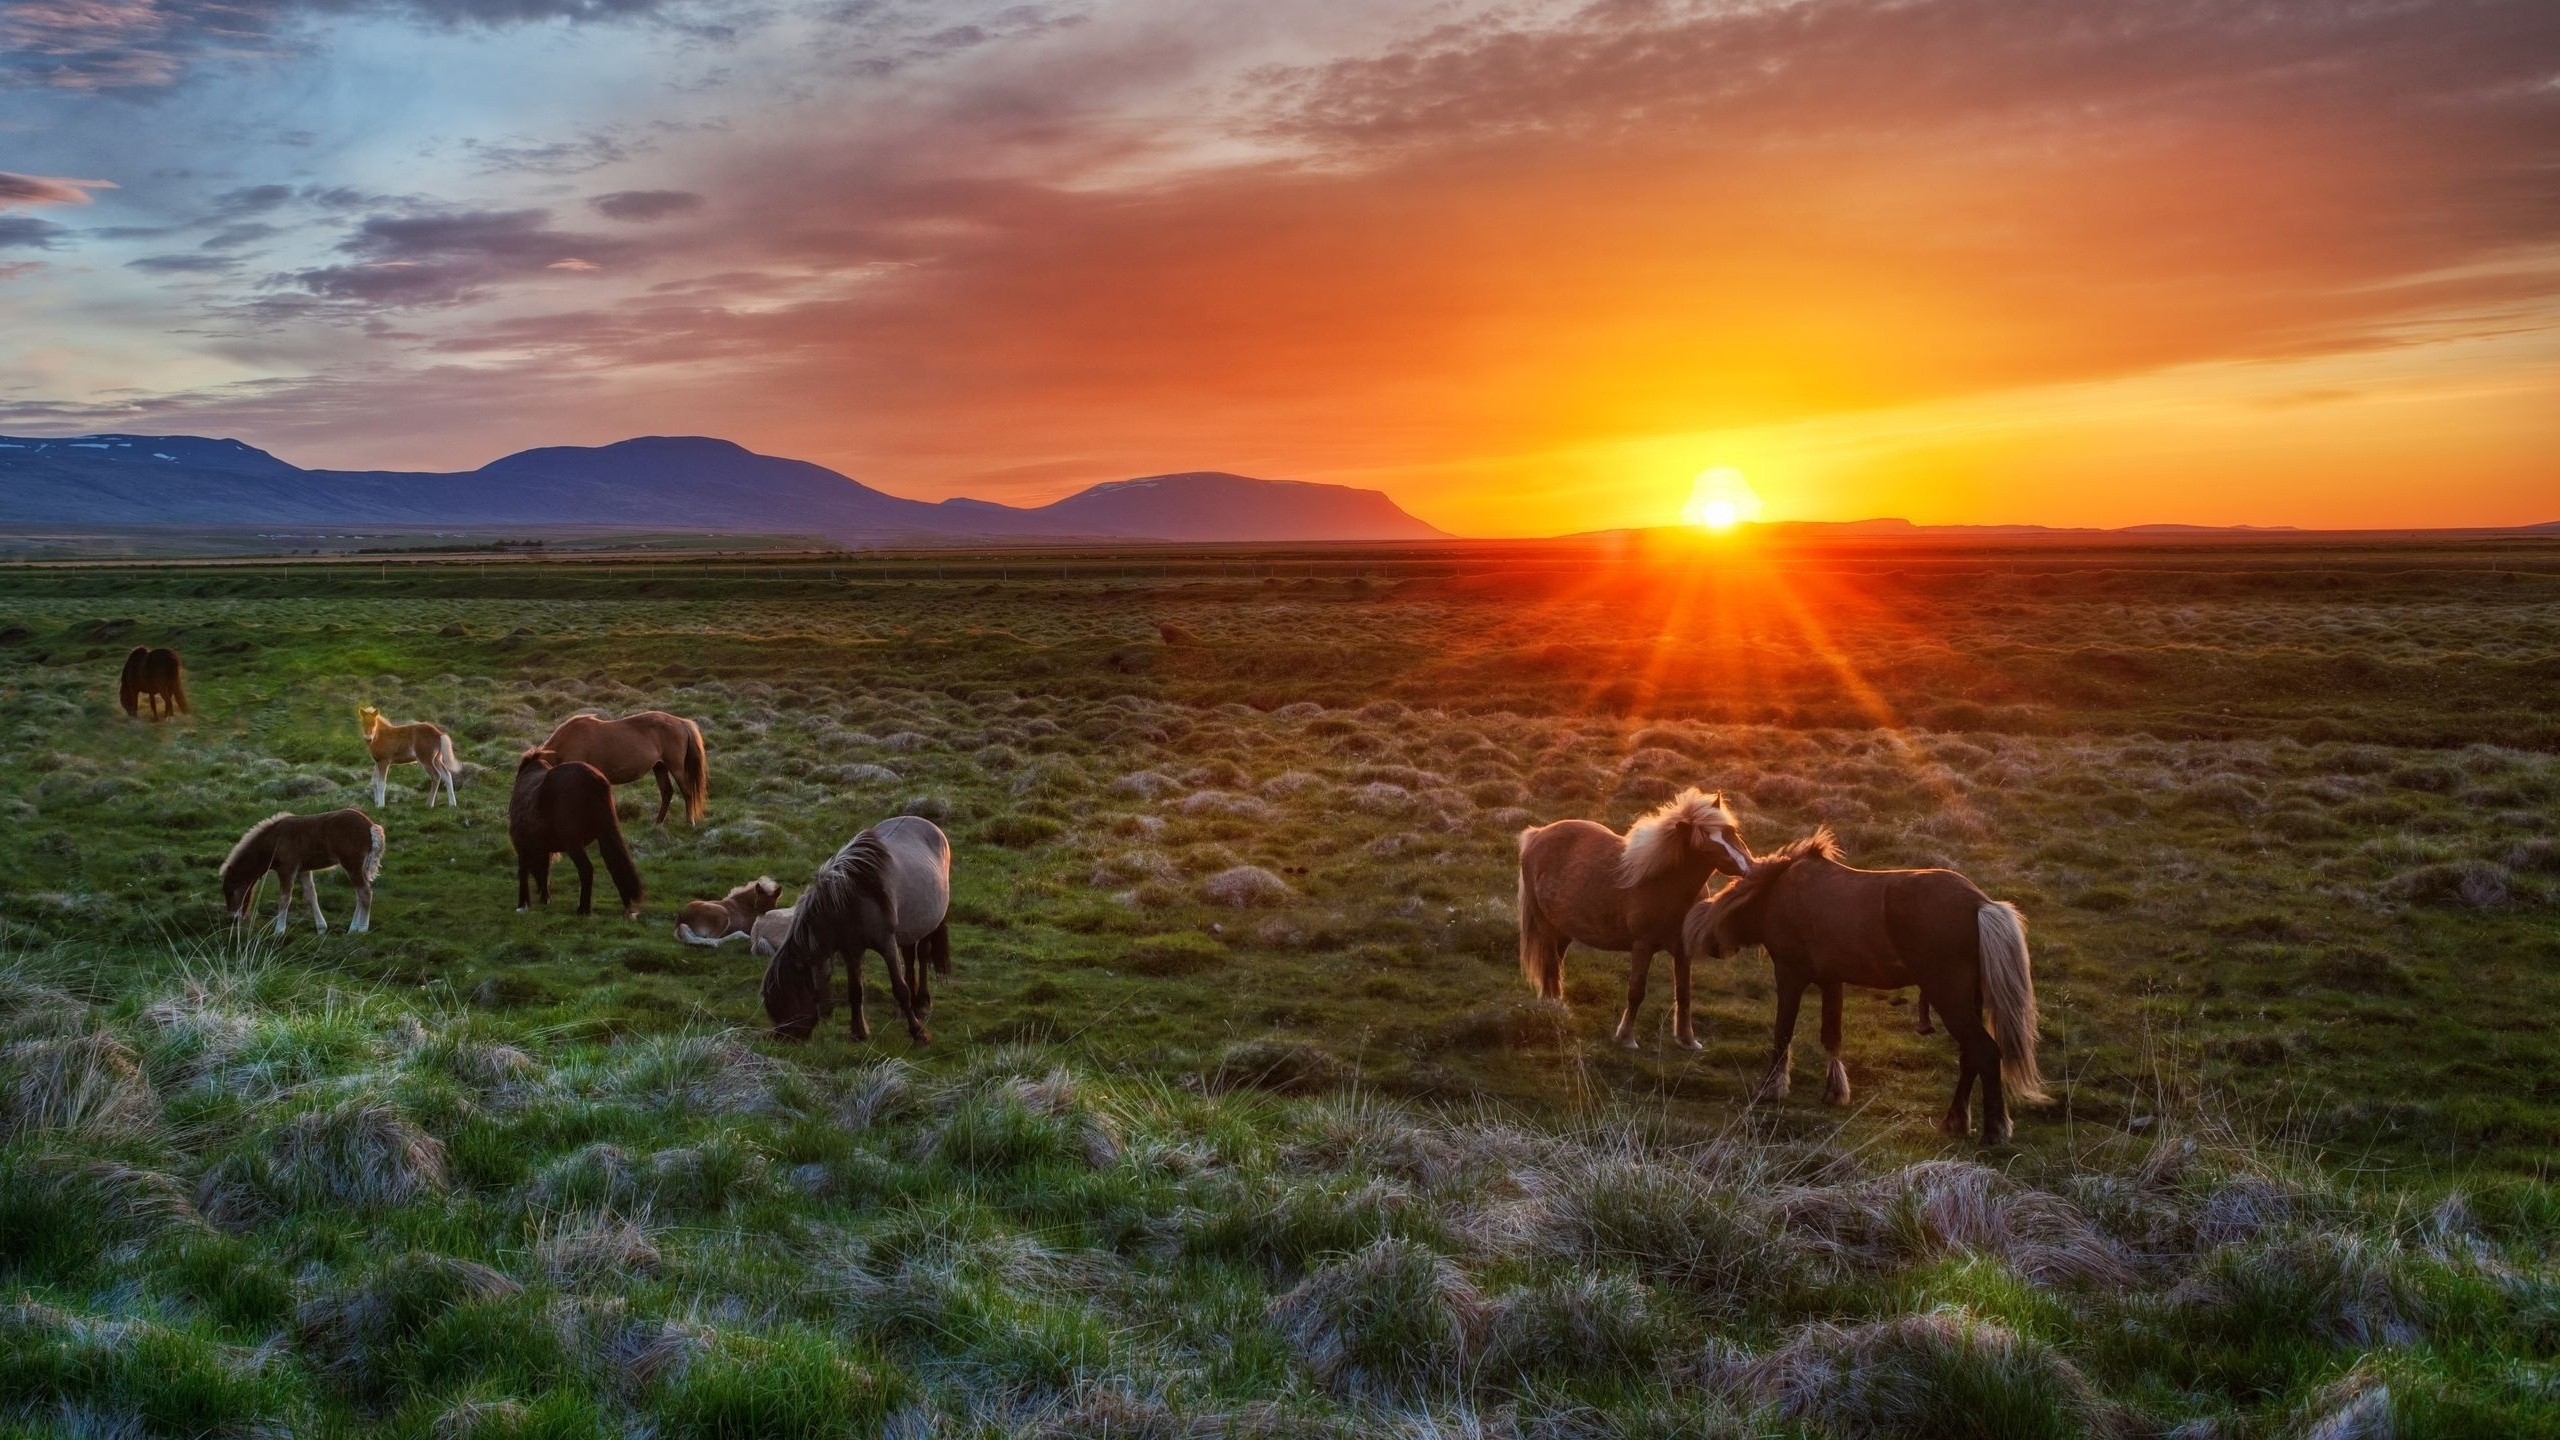 冰岛马, 冰岛, 放牧, 牛群, 野生动物 壁纸 2560x1440 允许